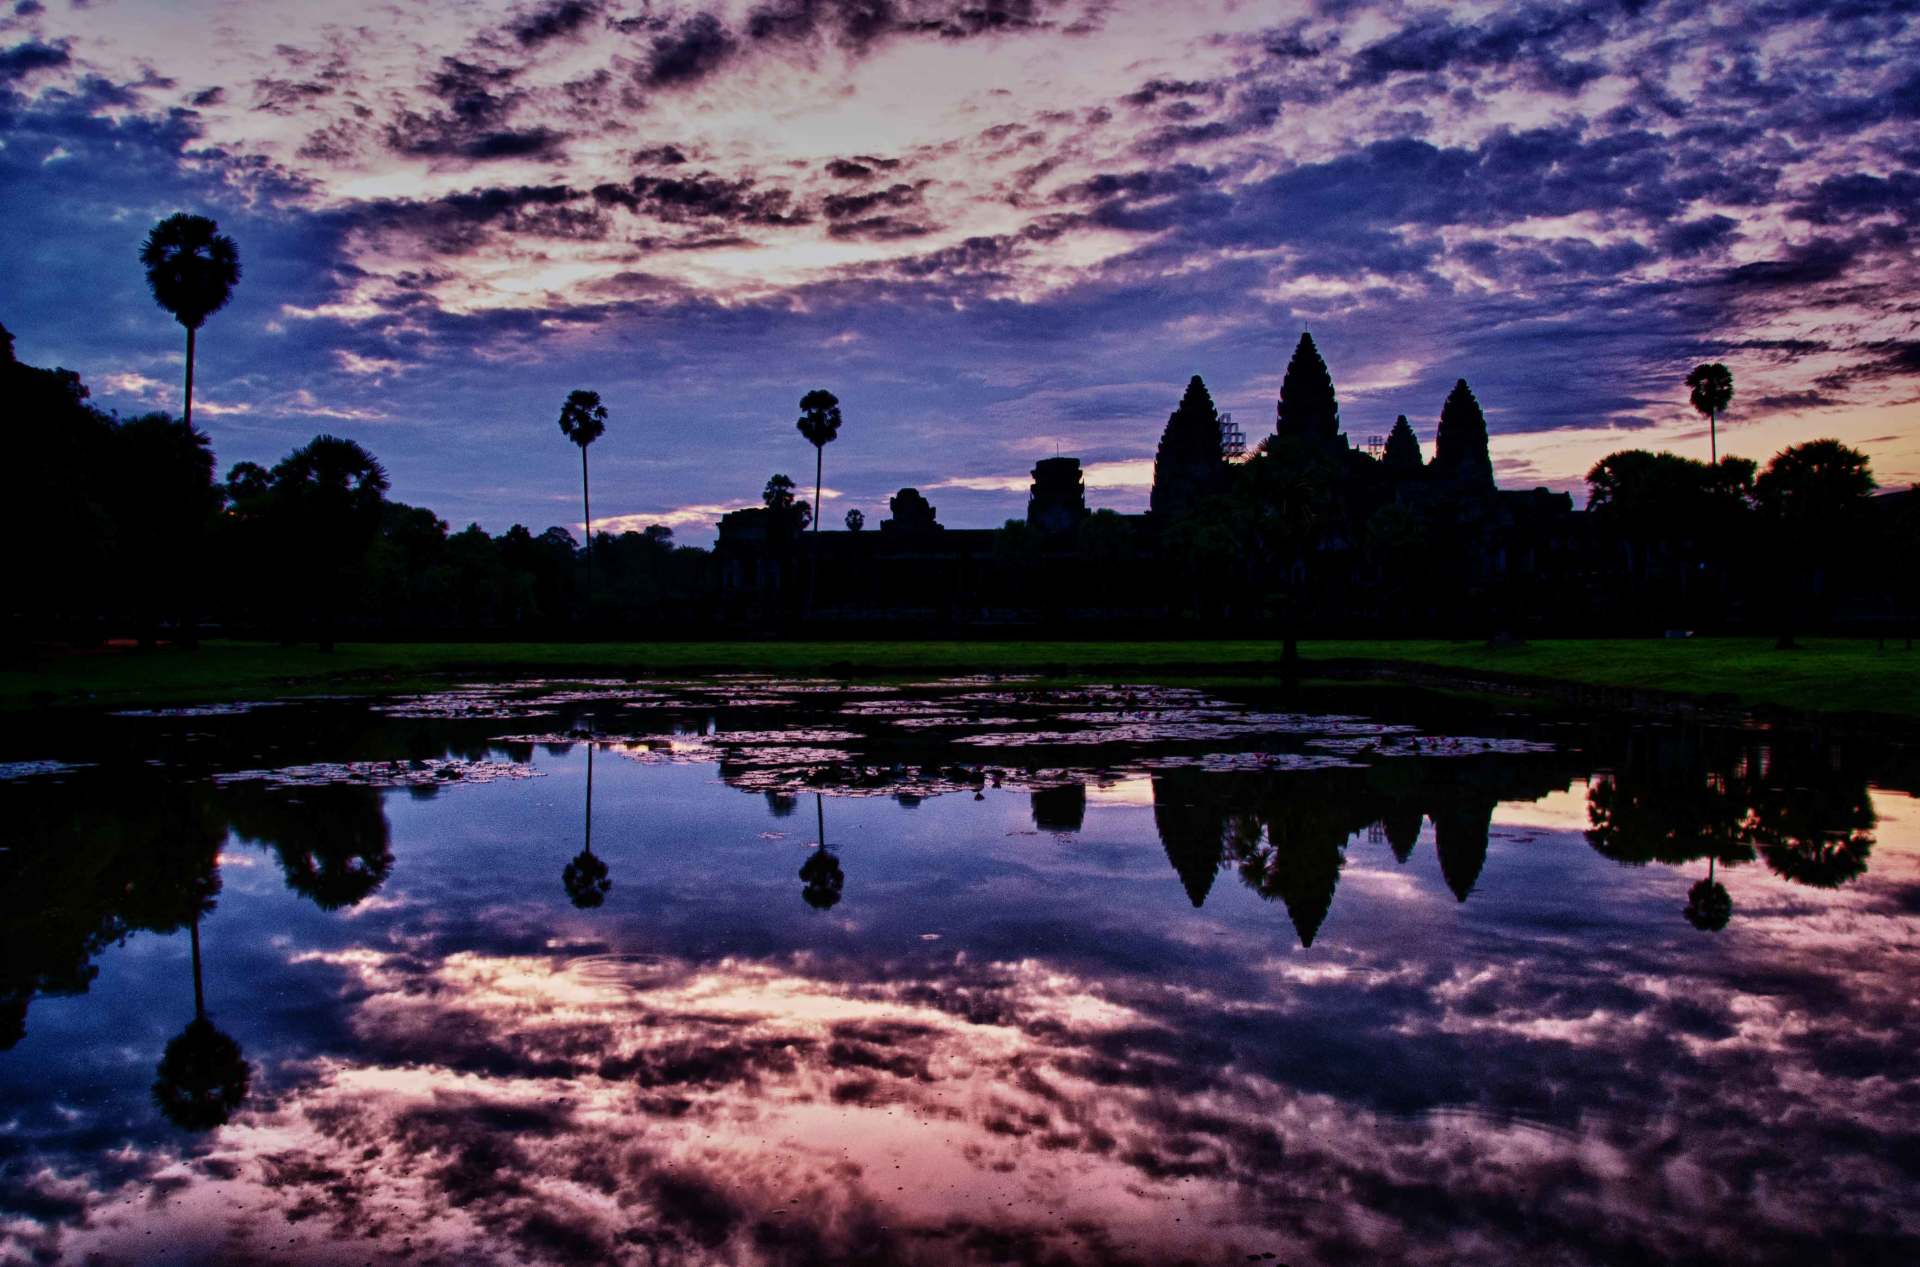 The reflection pool at dawn, Angkor Wat